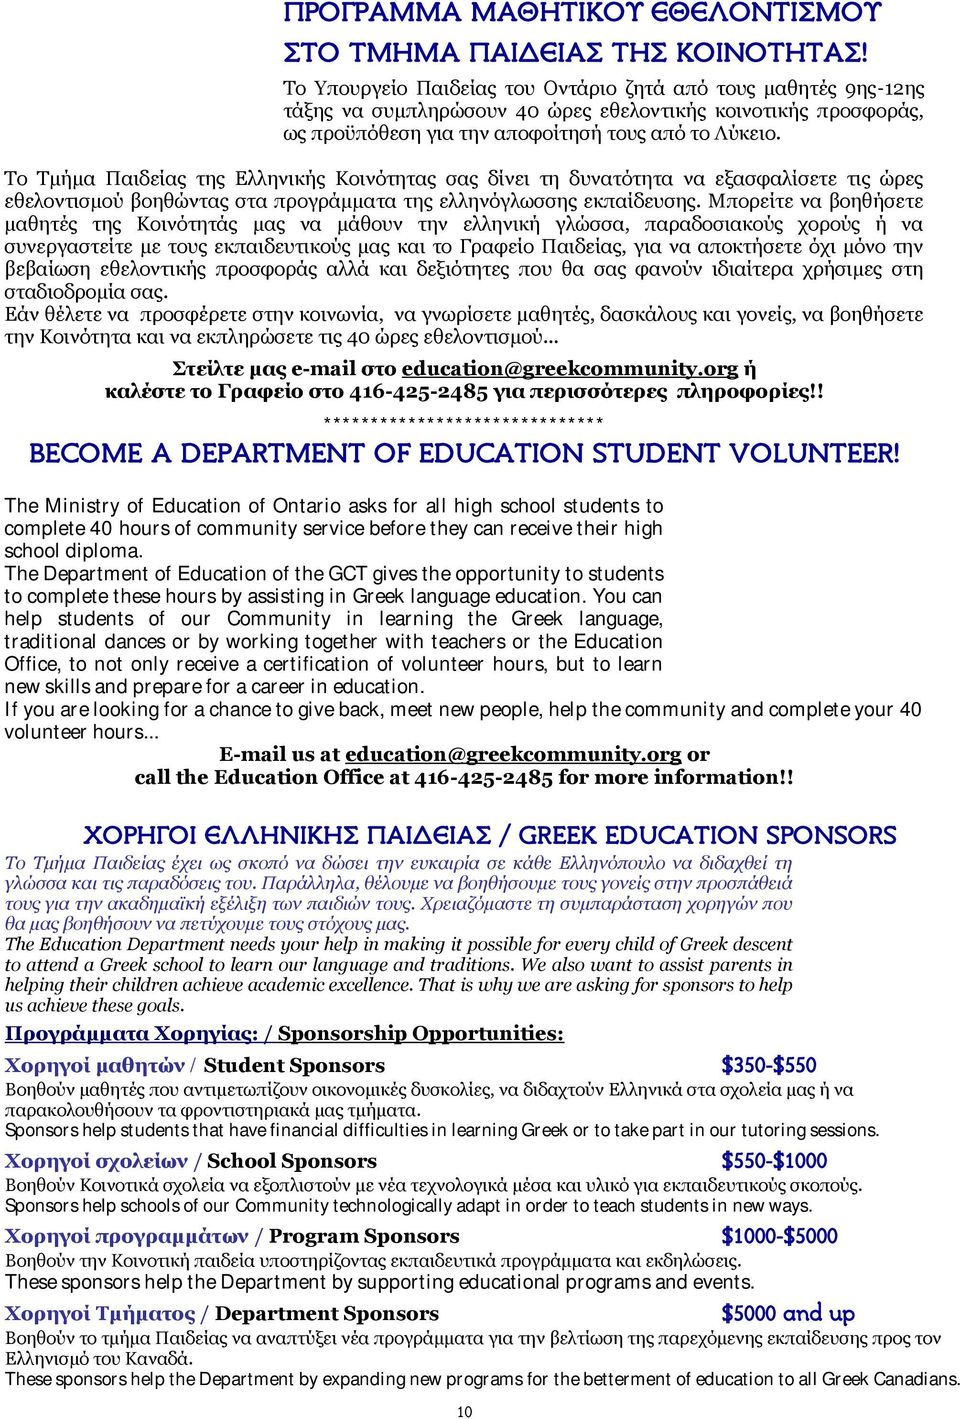 Το Τμήμα Παιδείας της Ελληνικής Κοινότητας σας δίνει τη δυνατότητα να εξασφαλίσετε τις ώρες εθελοντισμού βοηθώντας στα προγράμματα της ελληνόγλωσσης εκπαίδευσης.